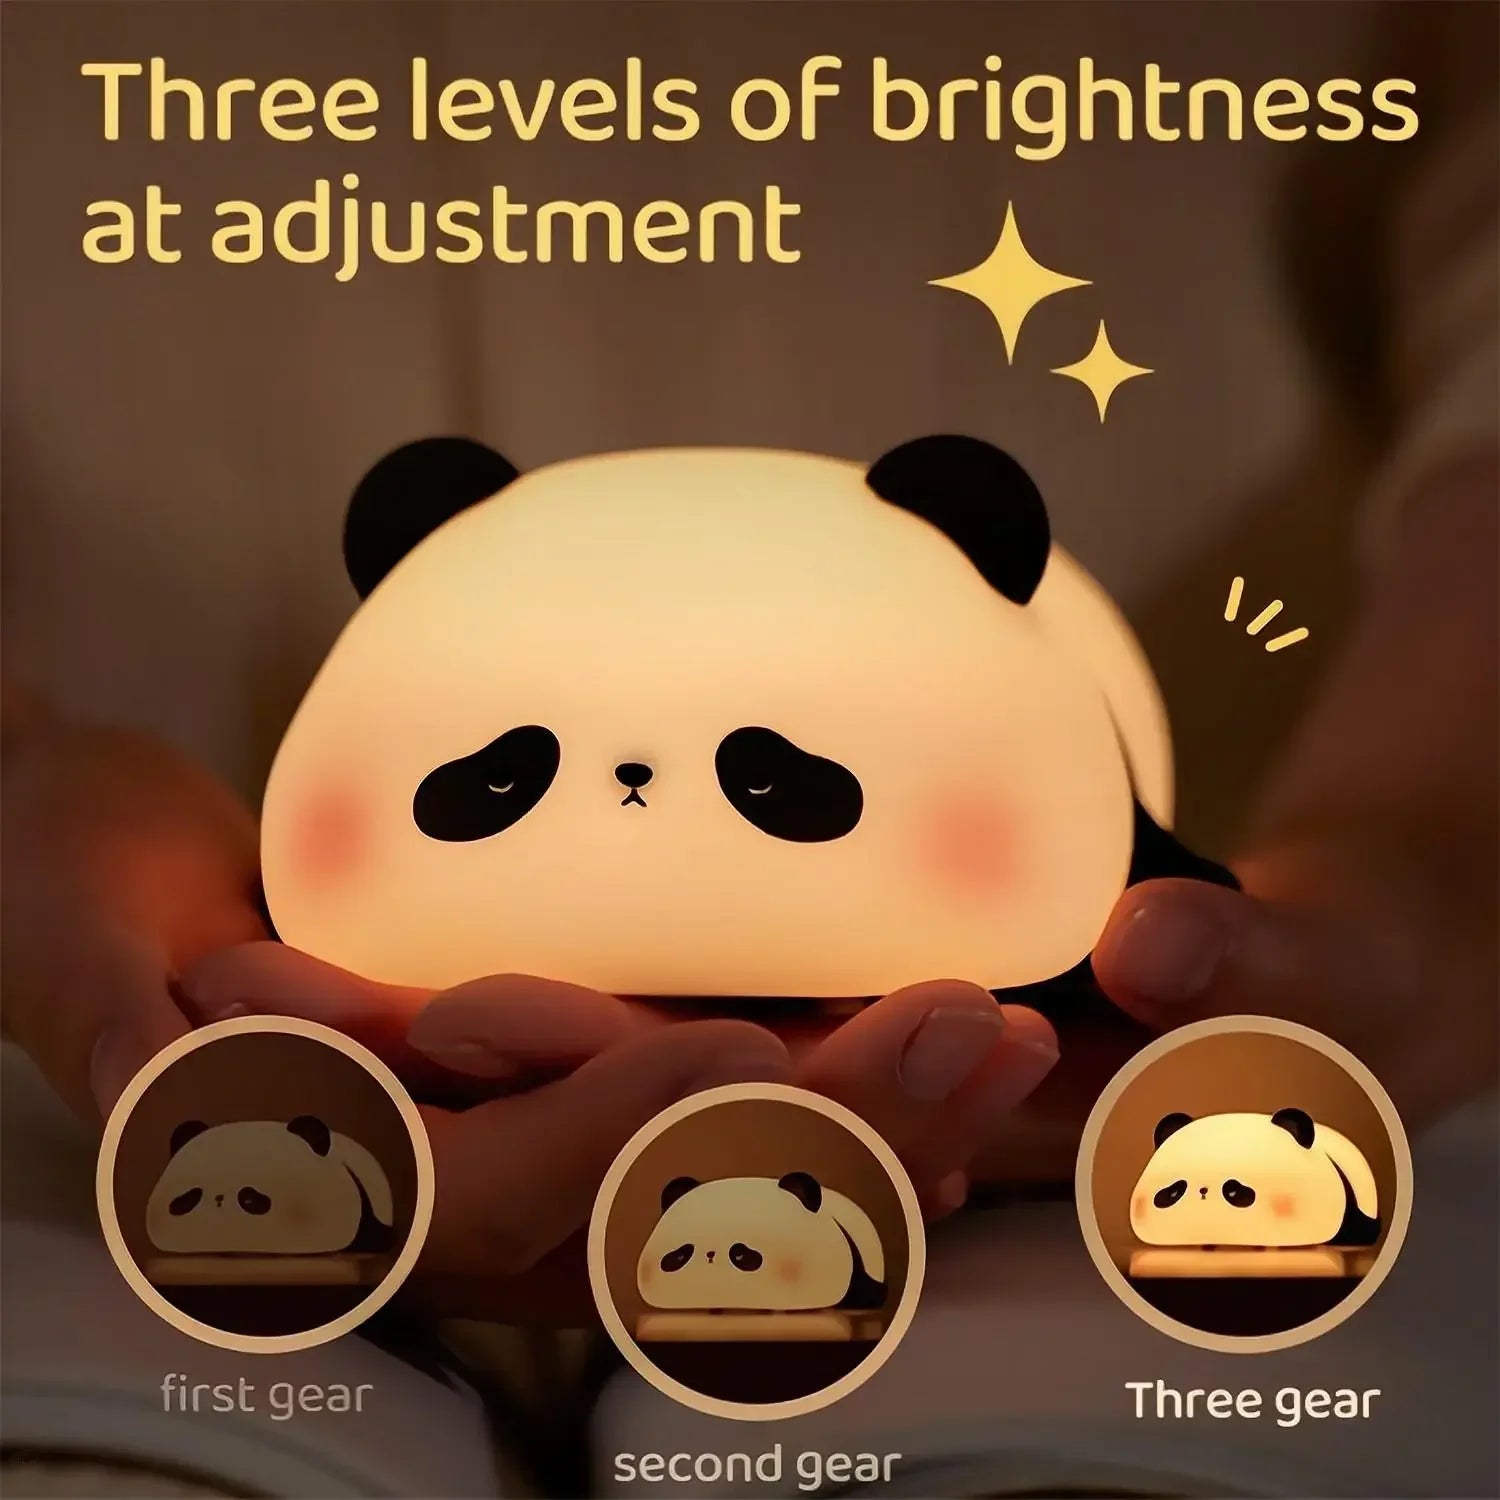 LED süße Schaf -Nacht -Licht USB Silicon Nachtlampe wiederaufladbare Touchsensor Nachtlicht Panda Kaninchenlampe für Kinder Schlafzimmer Dekor